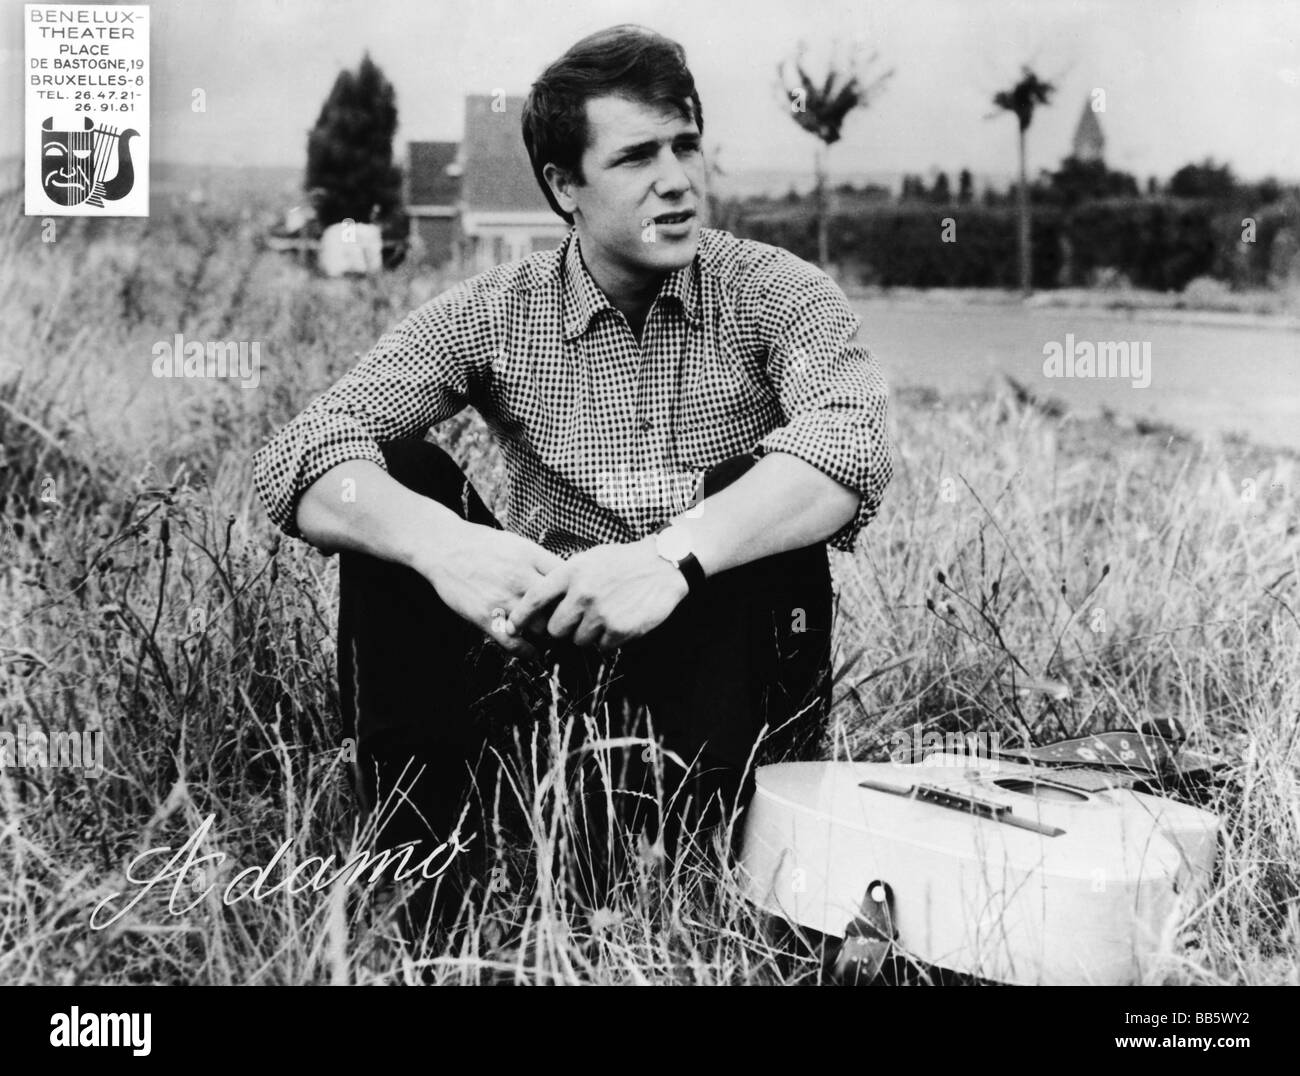 Adamo, Salvatore * 1.11.1943, cantante belga, a mezza lunghezza, seduto in erba, 1960s, Foto Stock